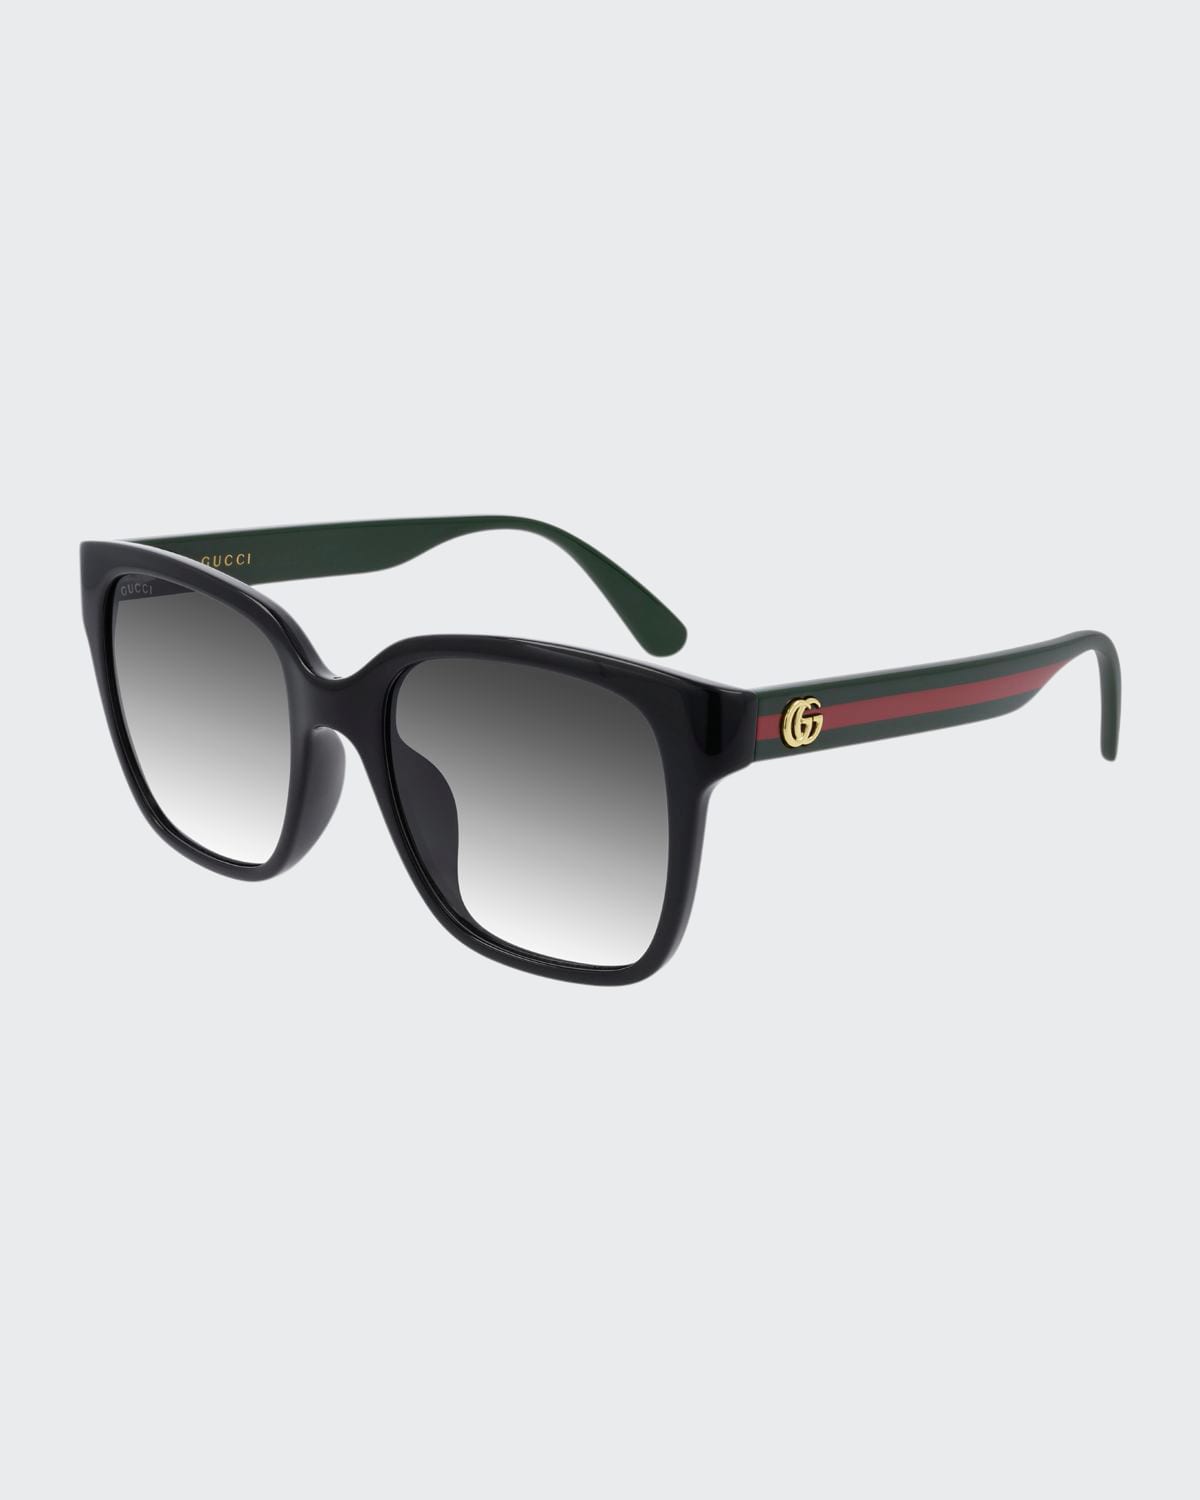 Gucci Square Gradient Sunglasses In Black Green Red